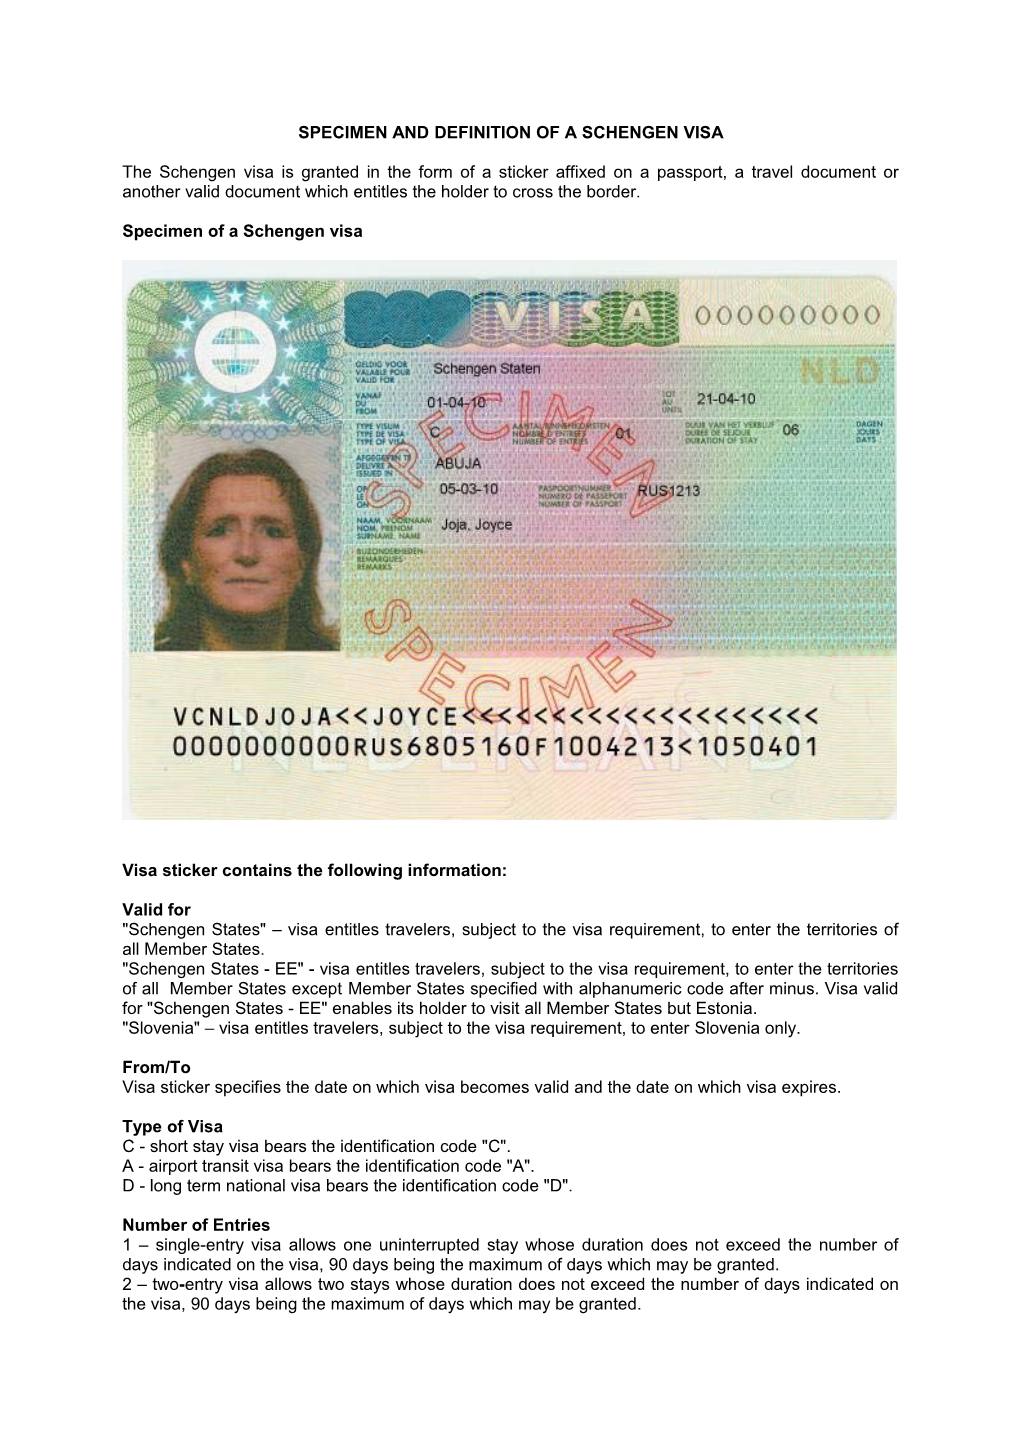 Specimen and Definition of a Schengen Visa